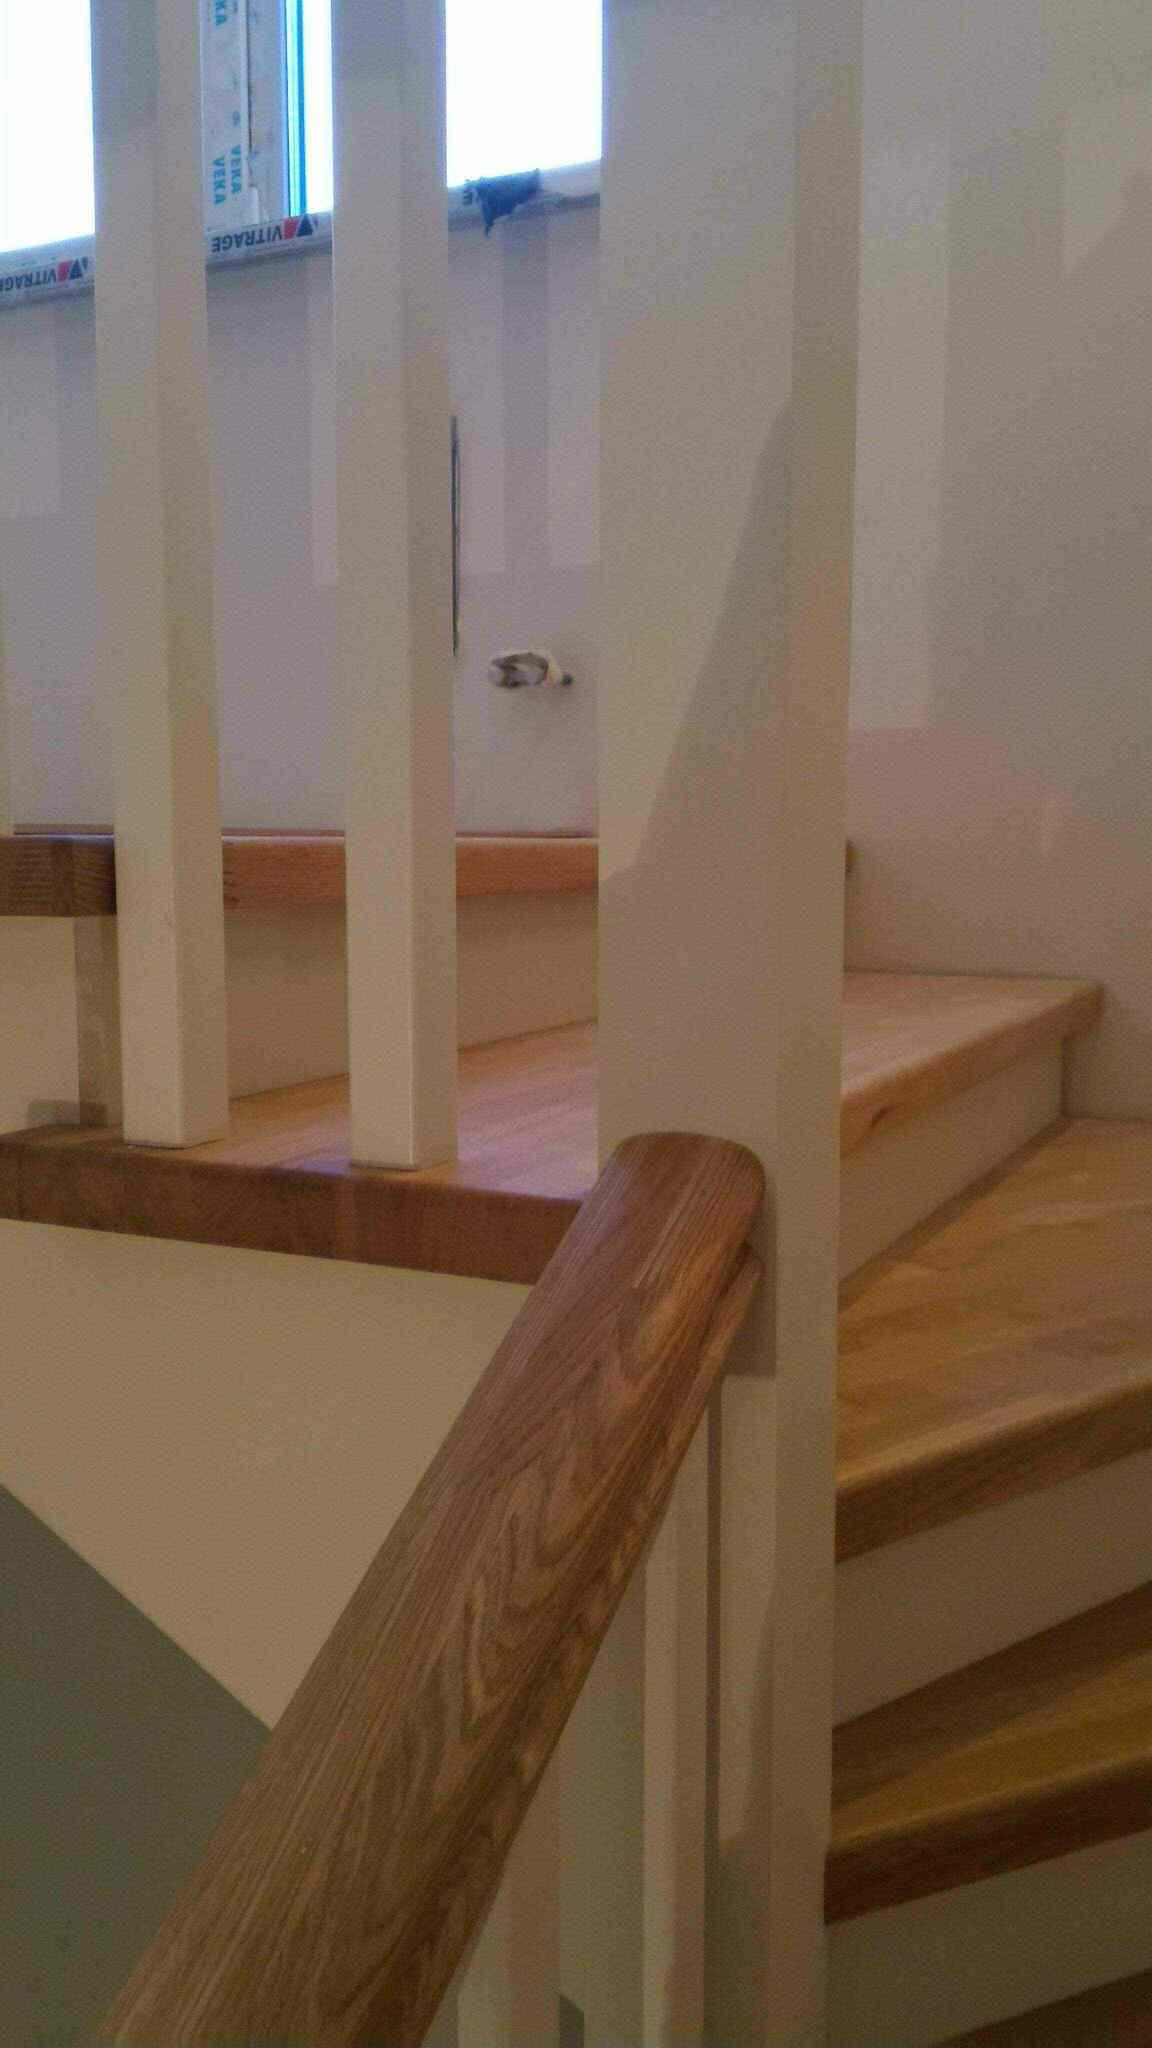 Как расставить и установить столбы, балясины и поручни лестницы на второй этаж в доме